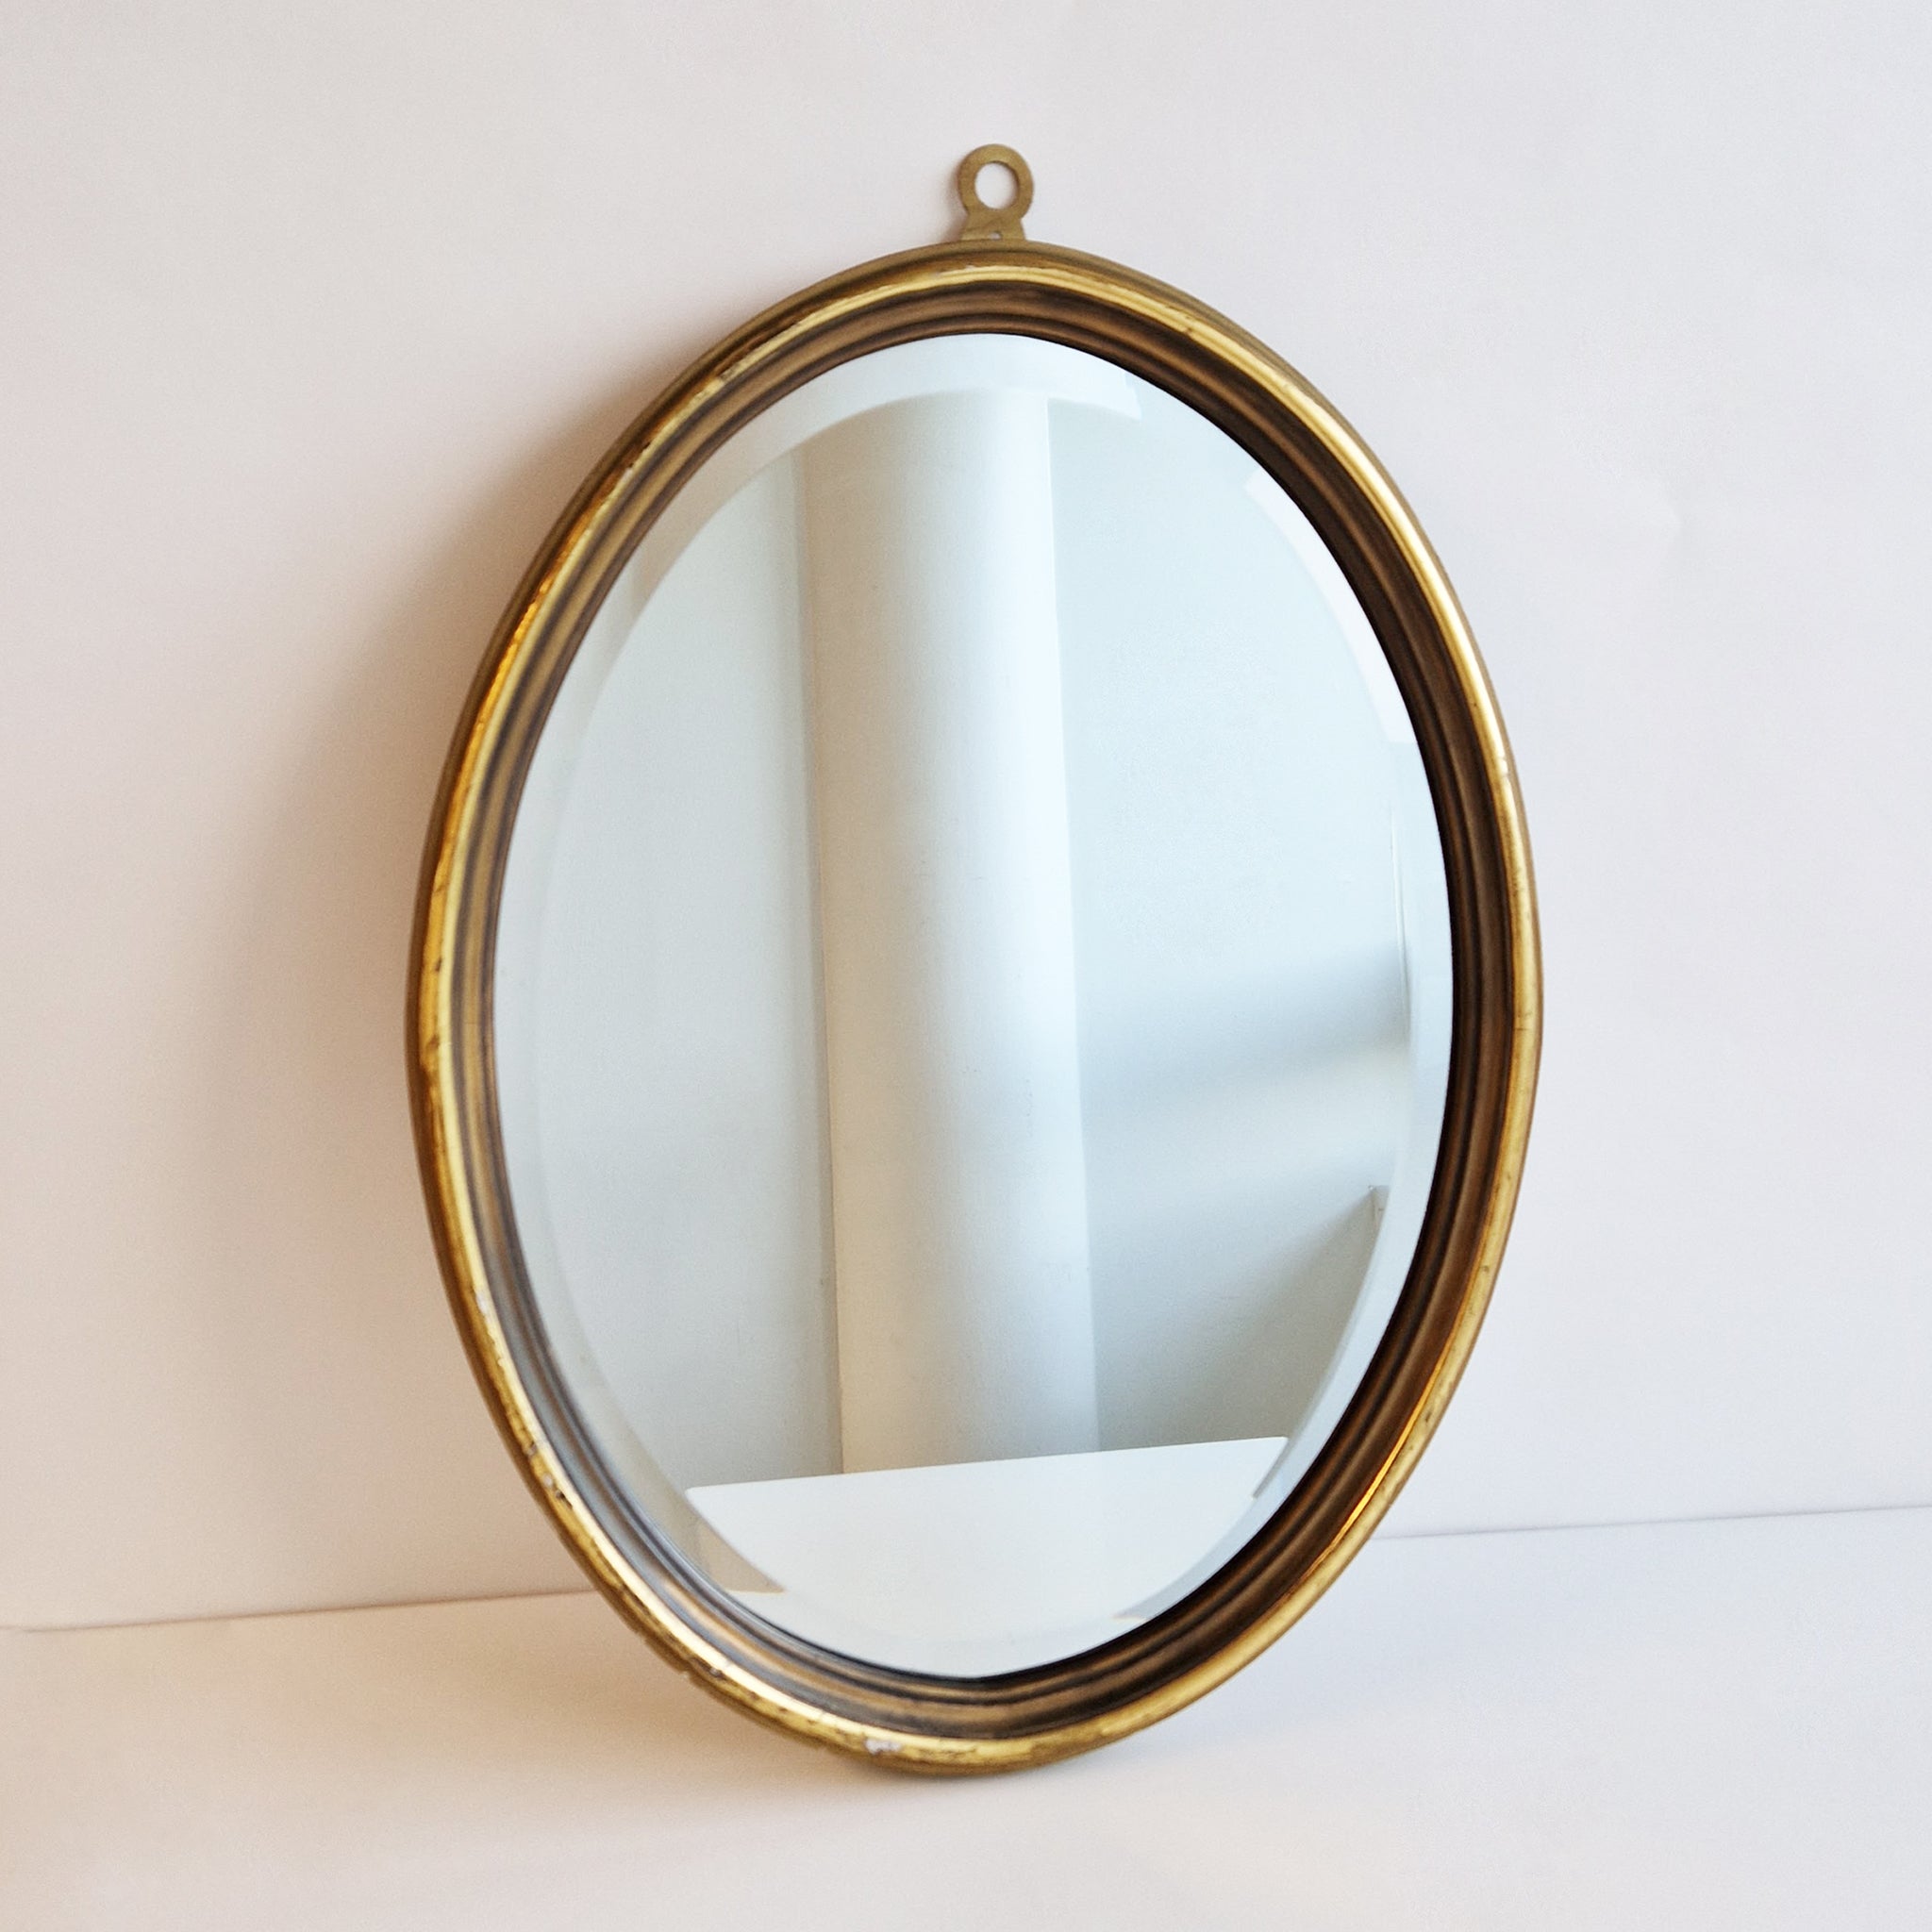 Vintage Italian oval mirror